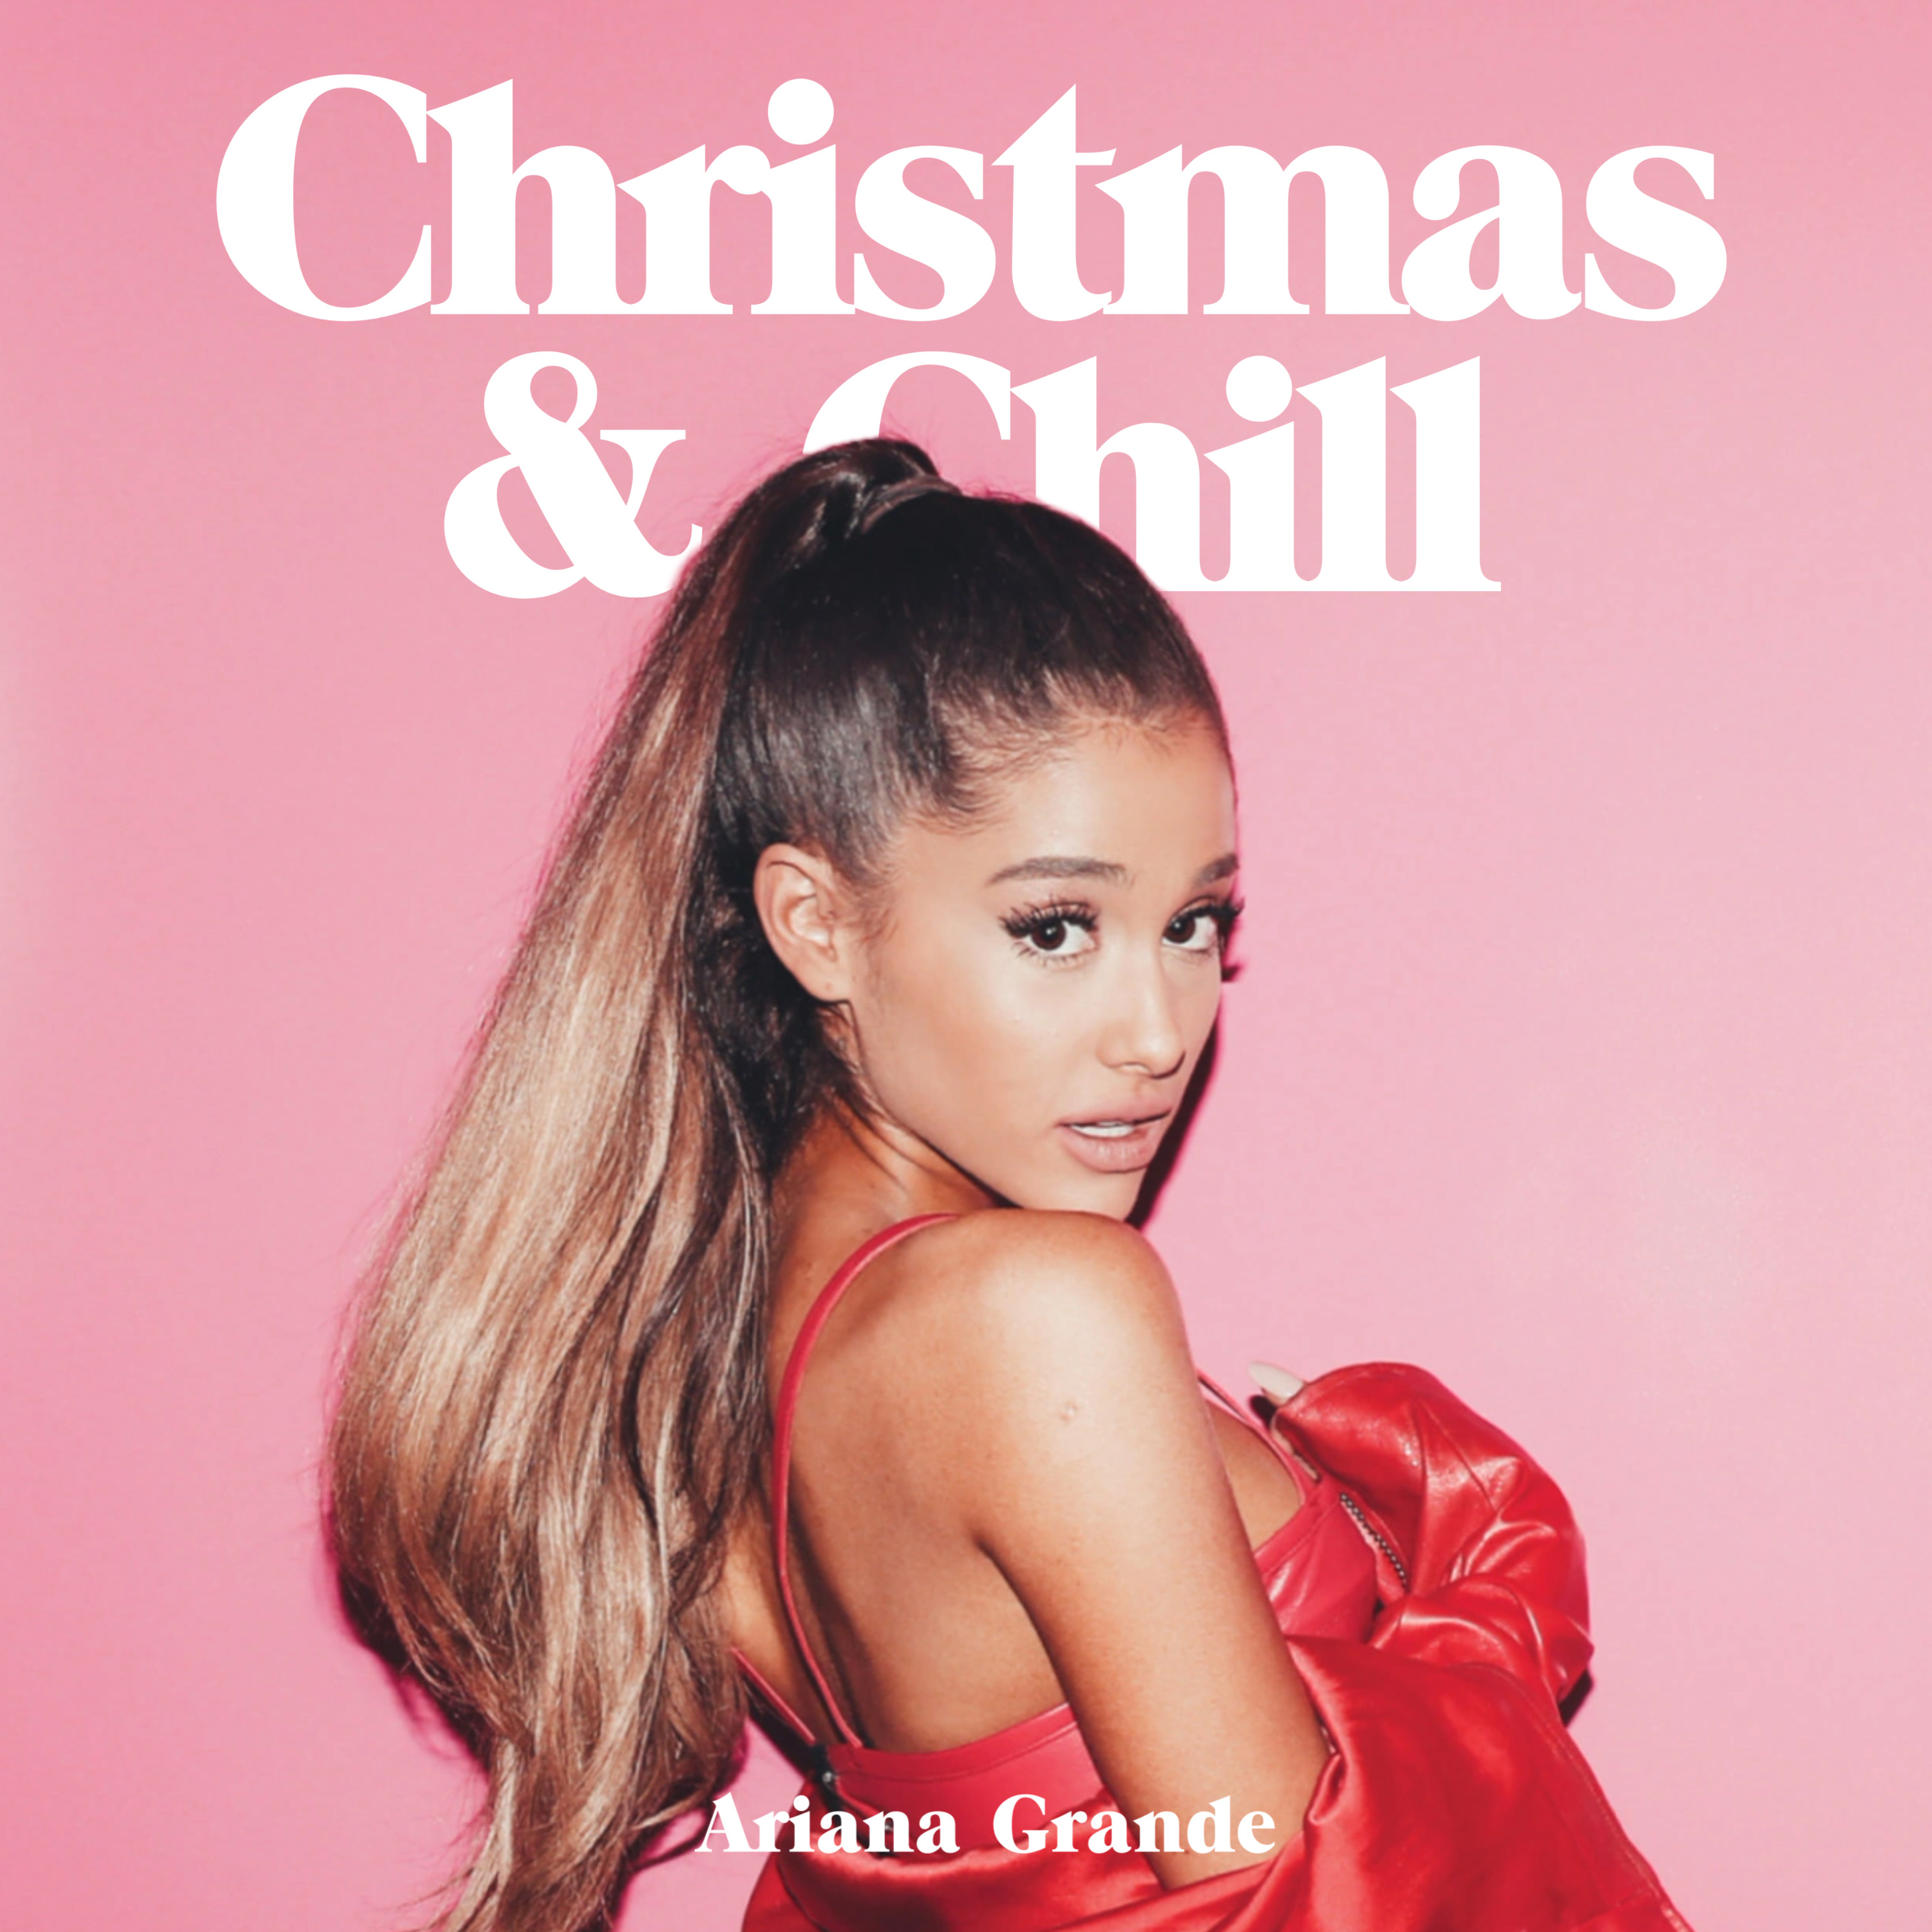 ariana grande last christmas album